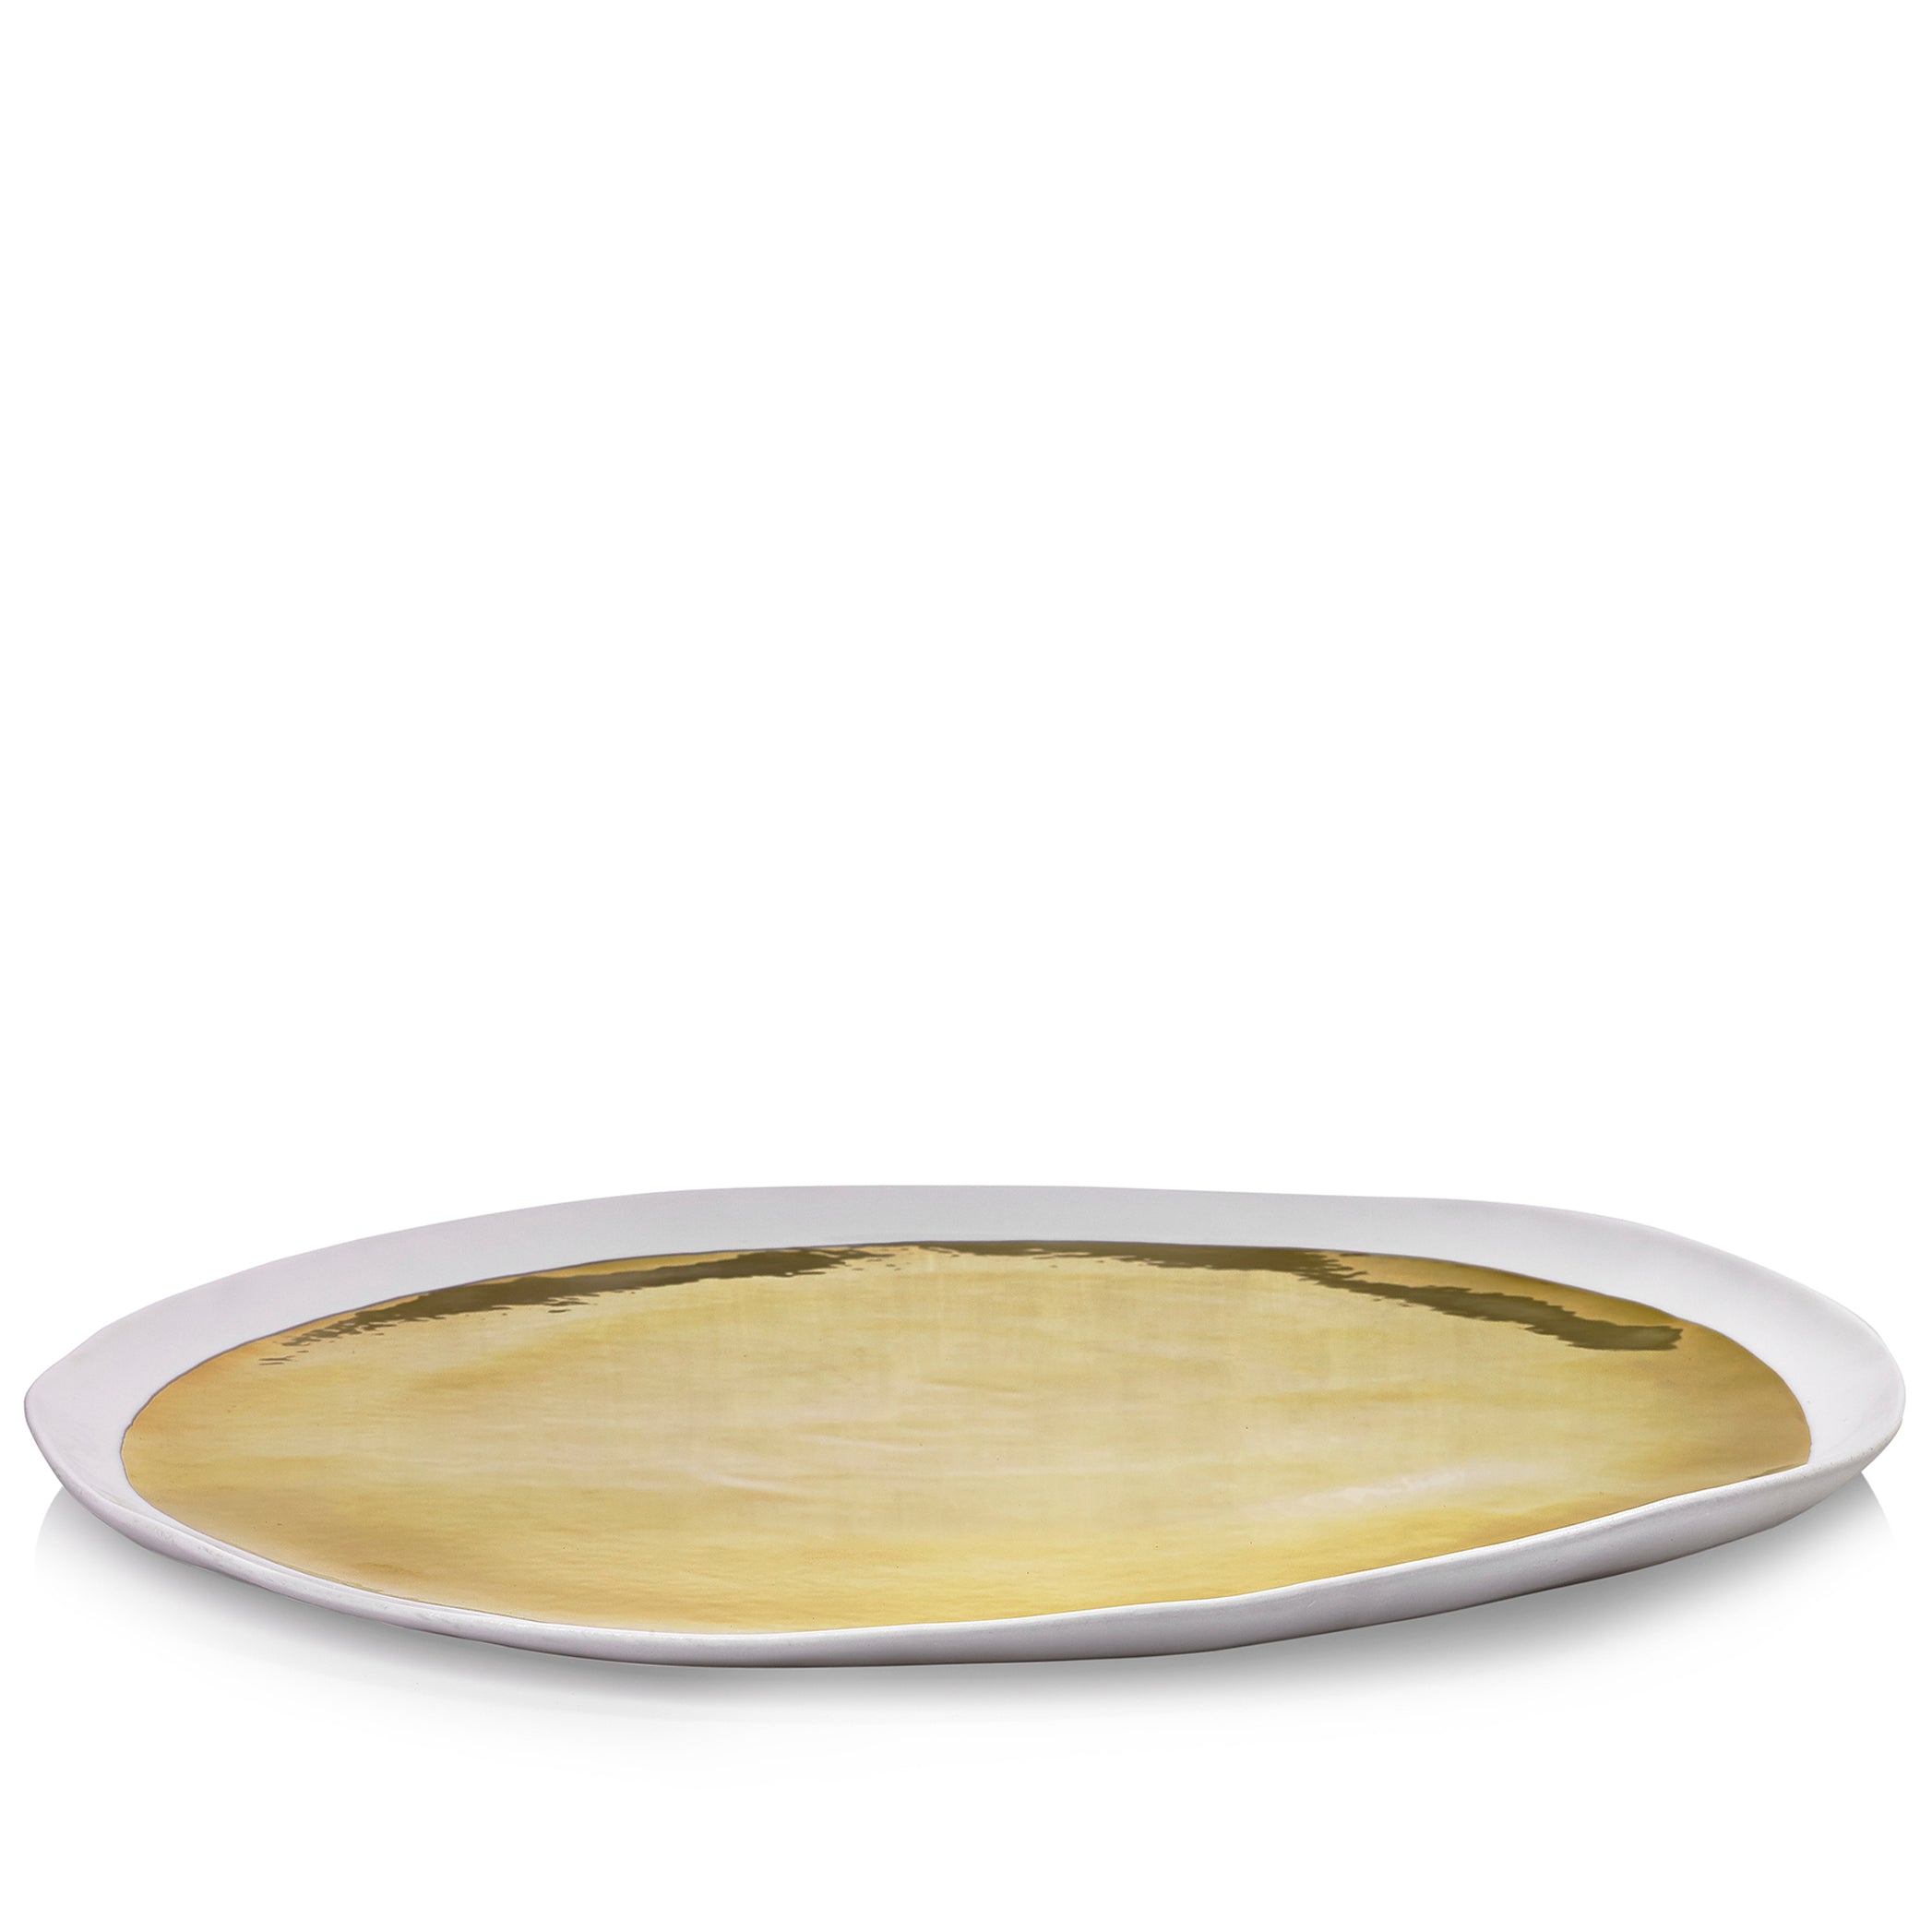 Summerill & Bishop Handmade 46cm Porcelain Extra Large Platter with Gold Glaze